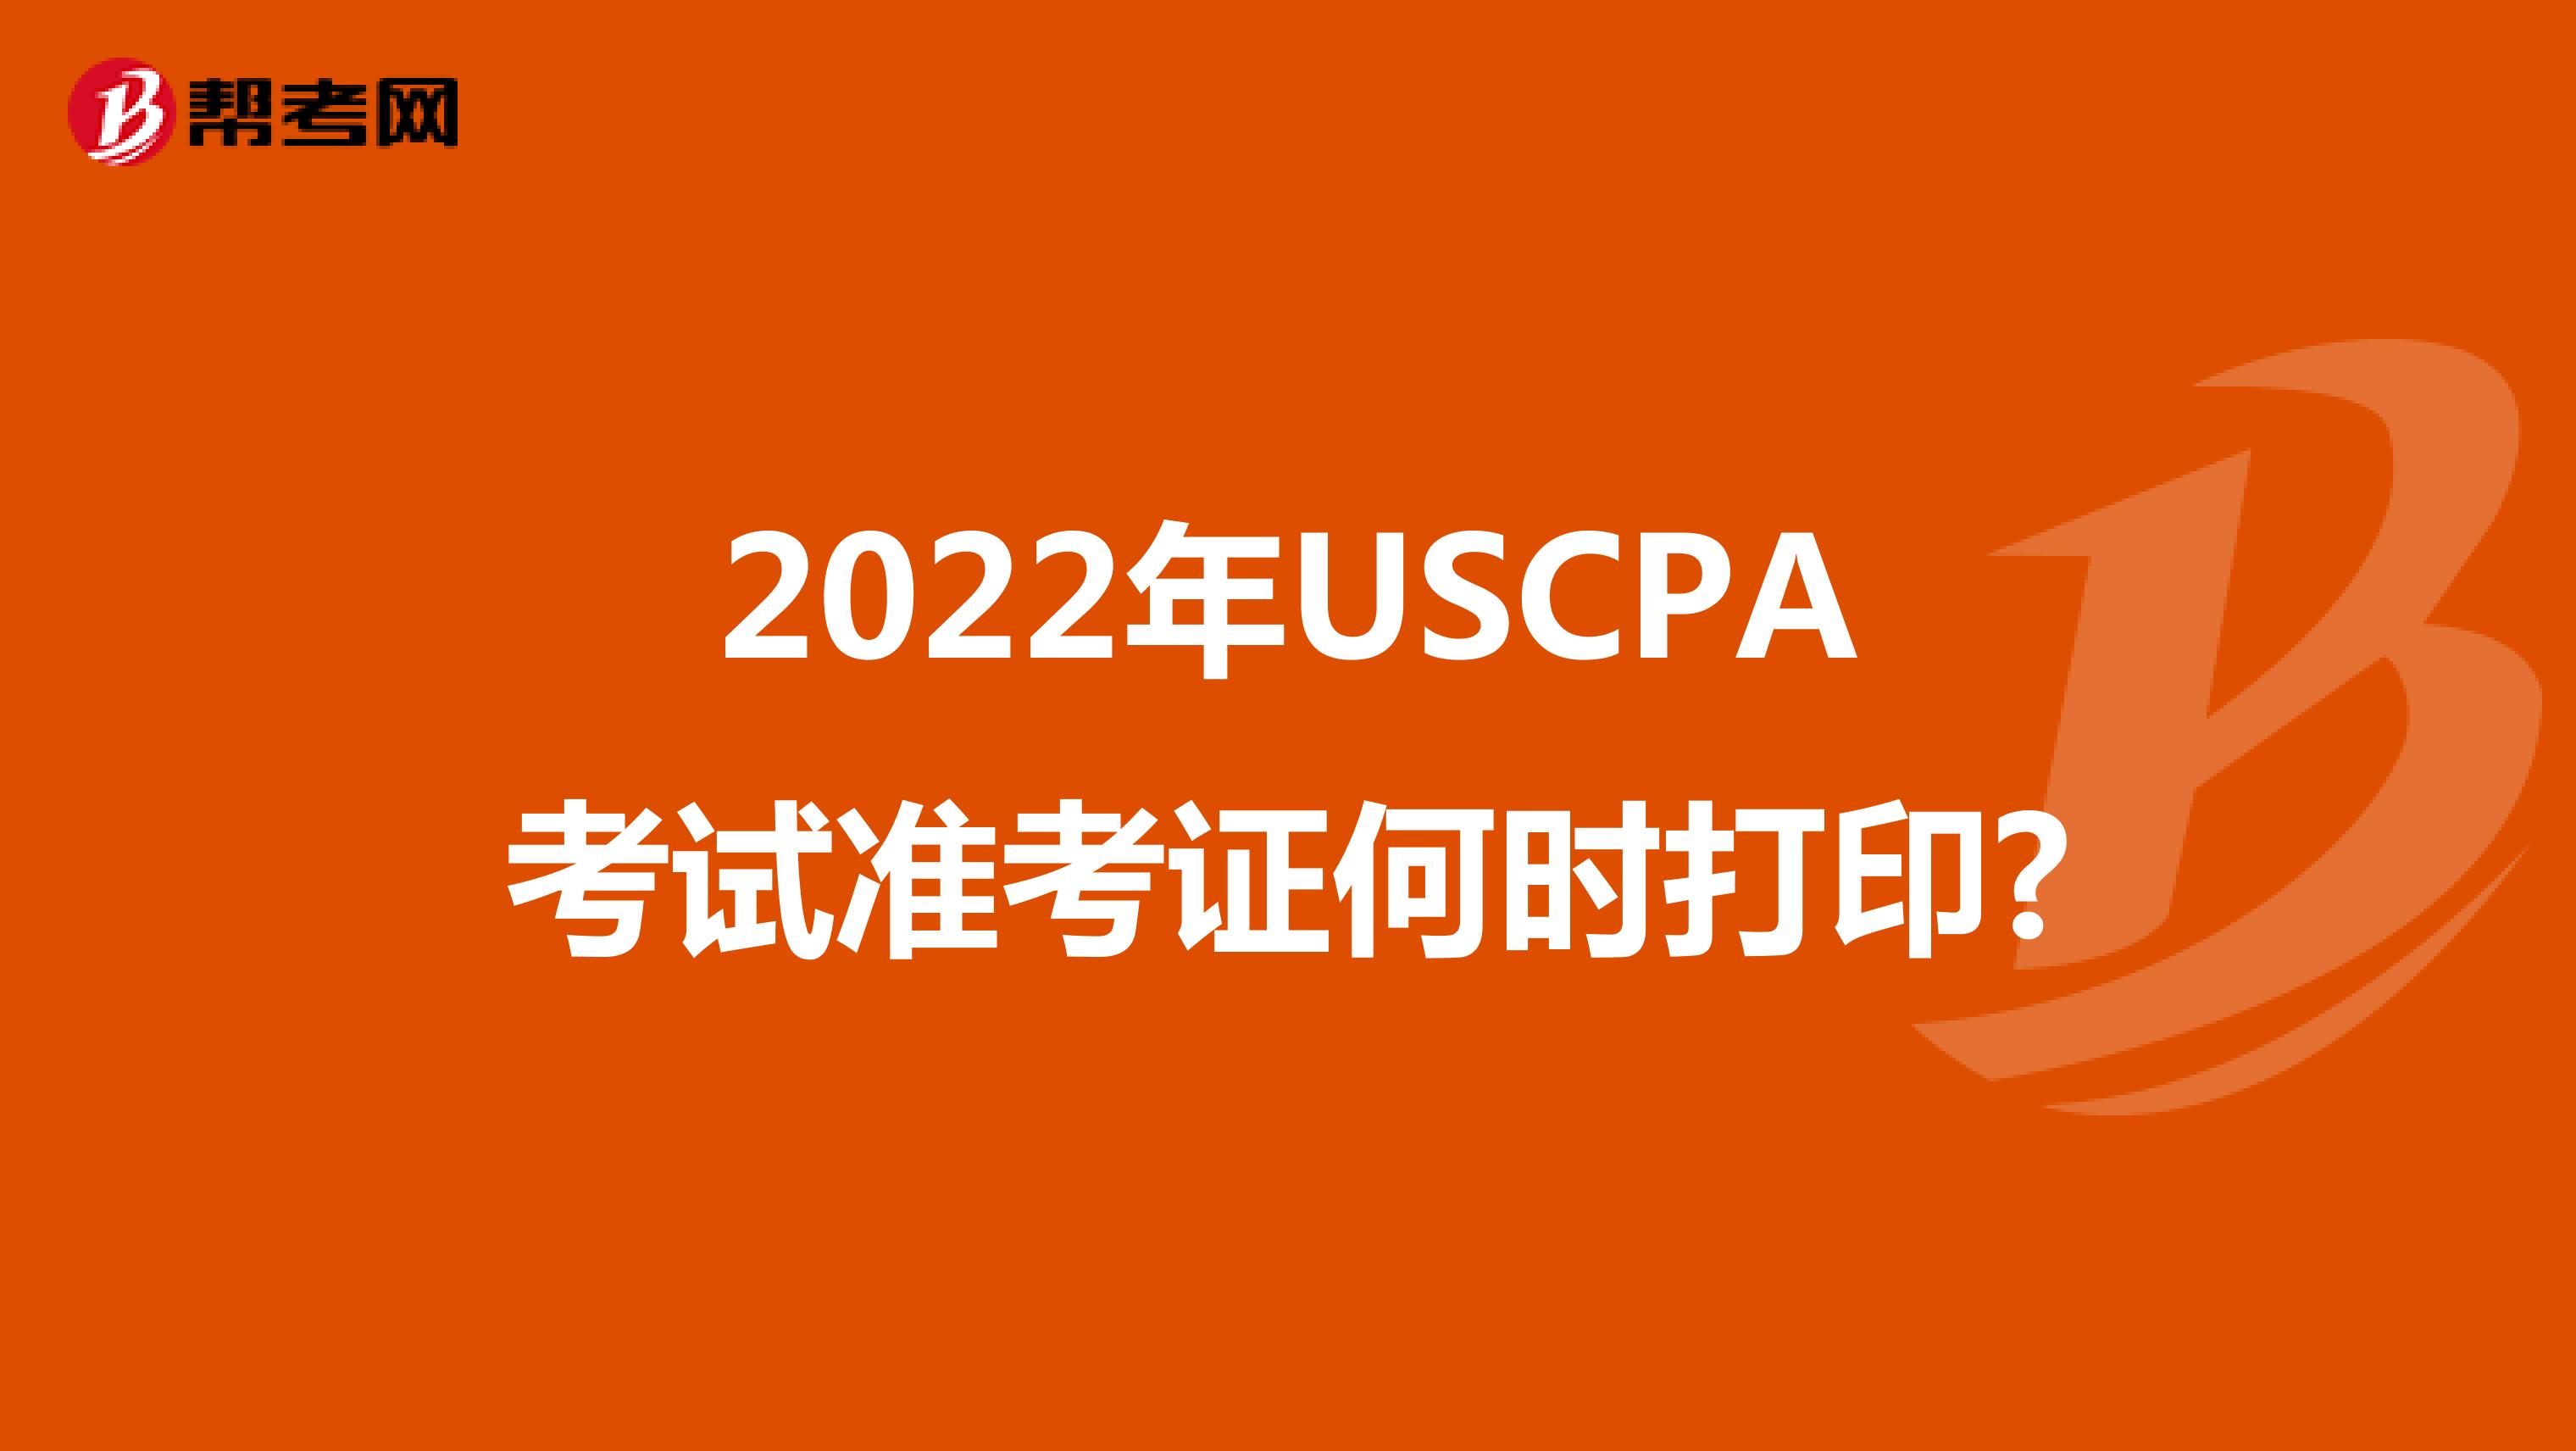 2022年USCPA考试准考证何时打印?